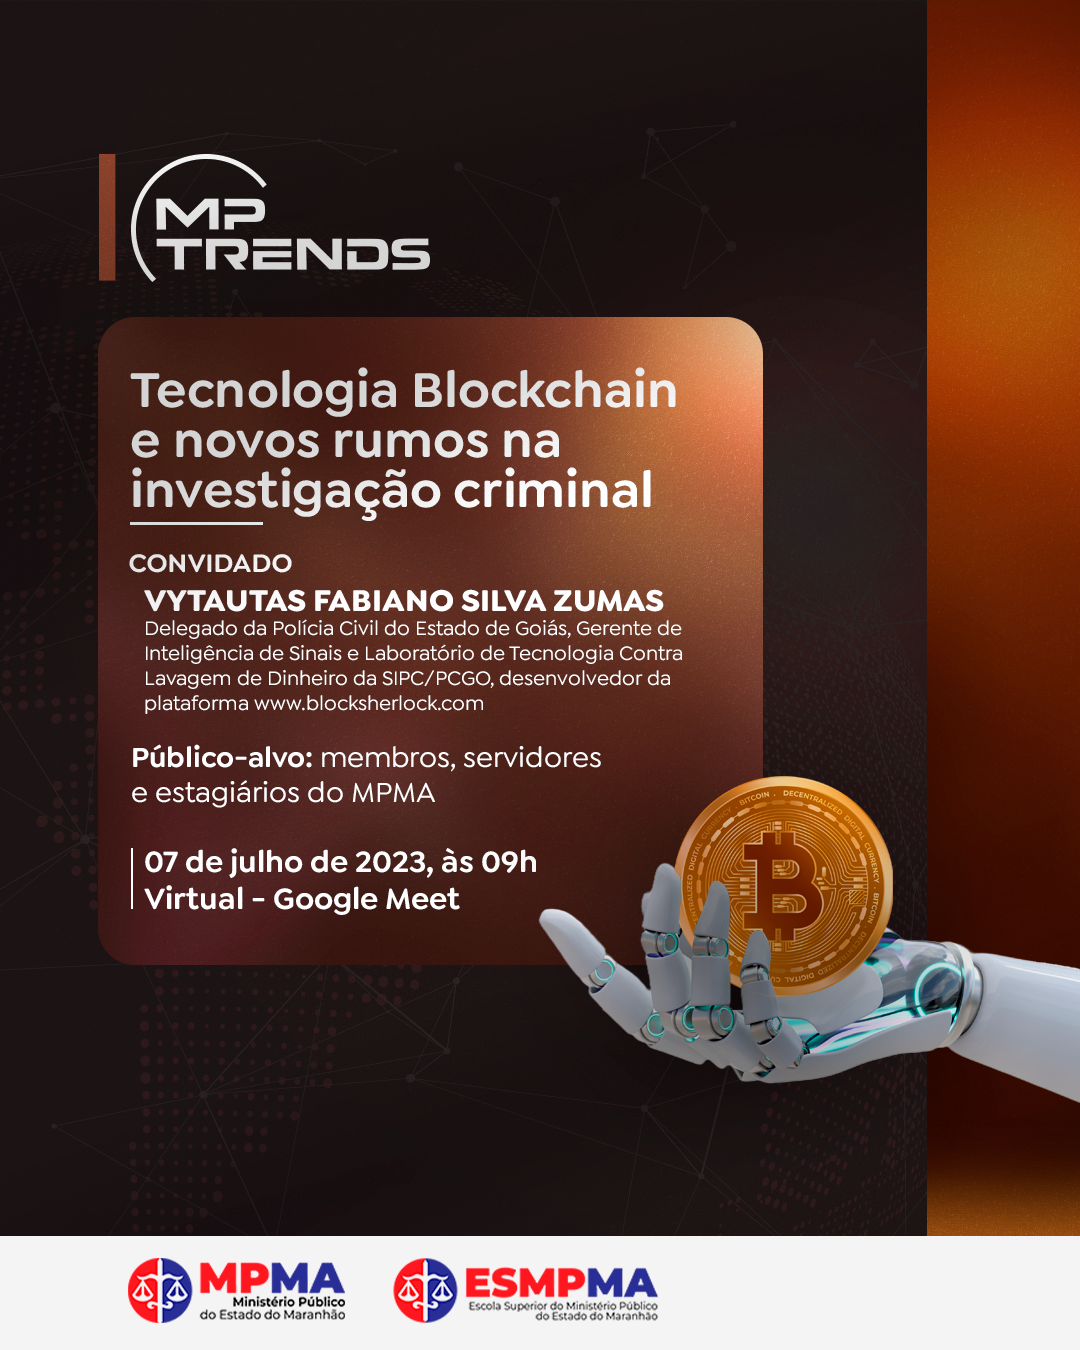 MP TRENDS: Tecnologia Blockchain e novos rumos na investigação criminal